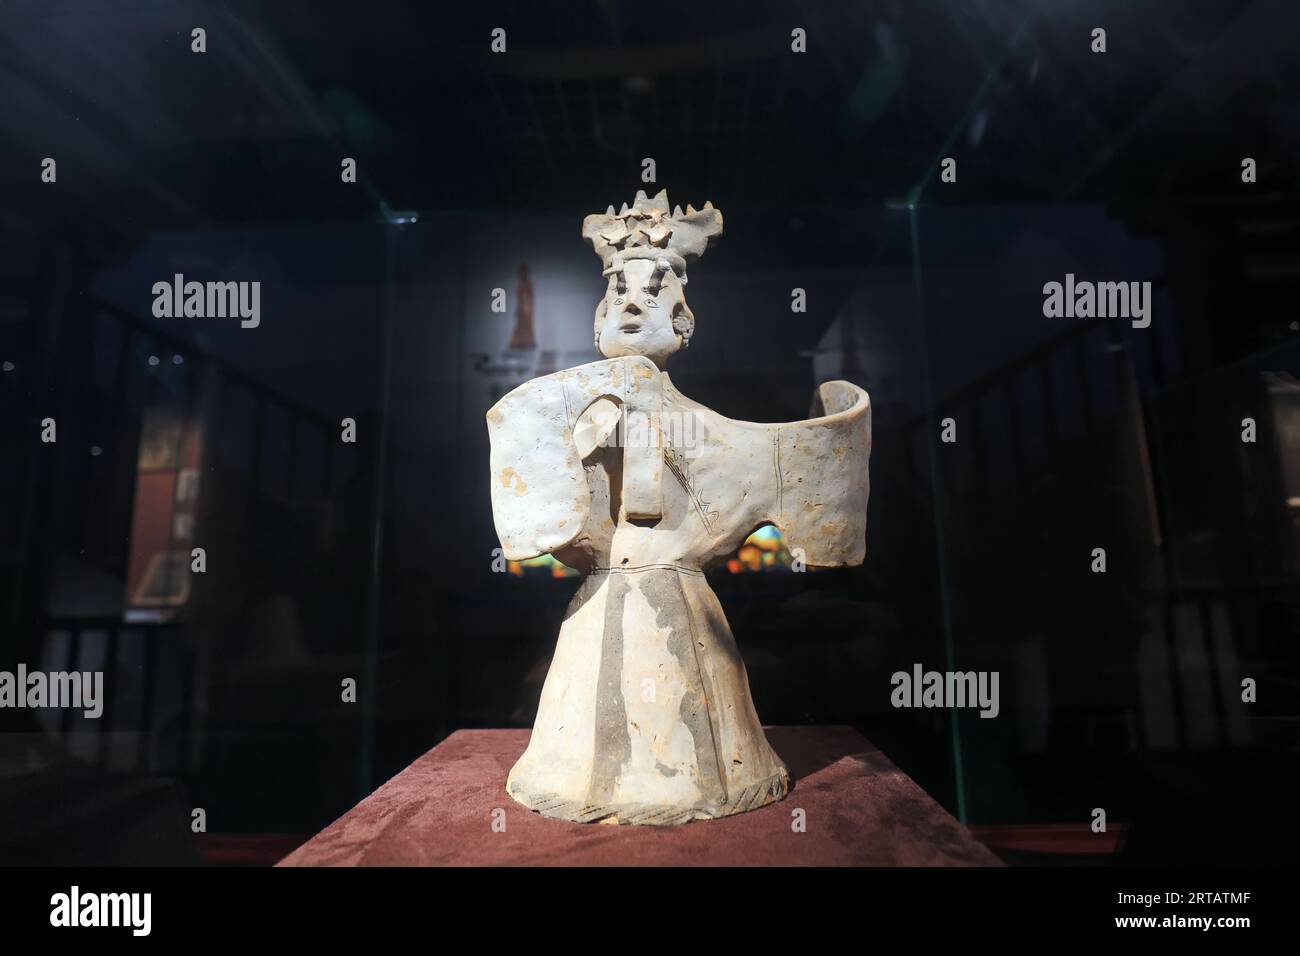 Guangzhou City, Chine - 5 avril 2019 : sculpture de chanteur en céramique de la dynastie Han orientaux dans le musée, ville de Guangzhou, province du Guangdong, Chine Banque D'Images